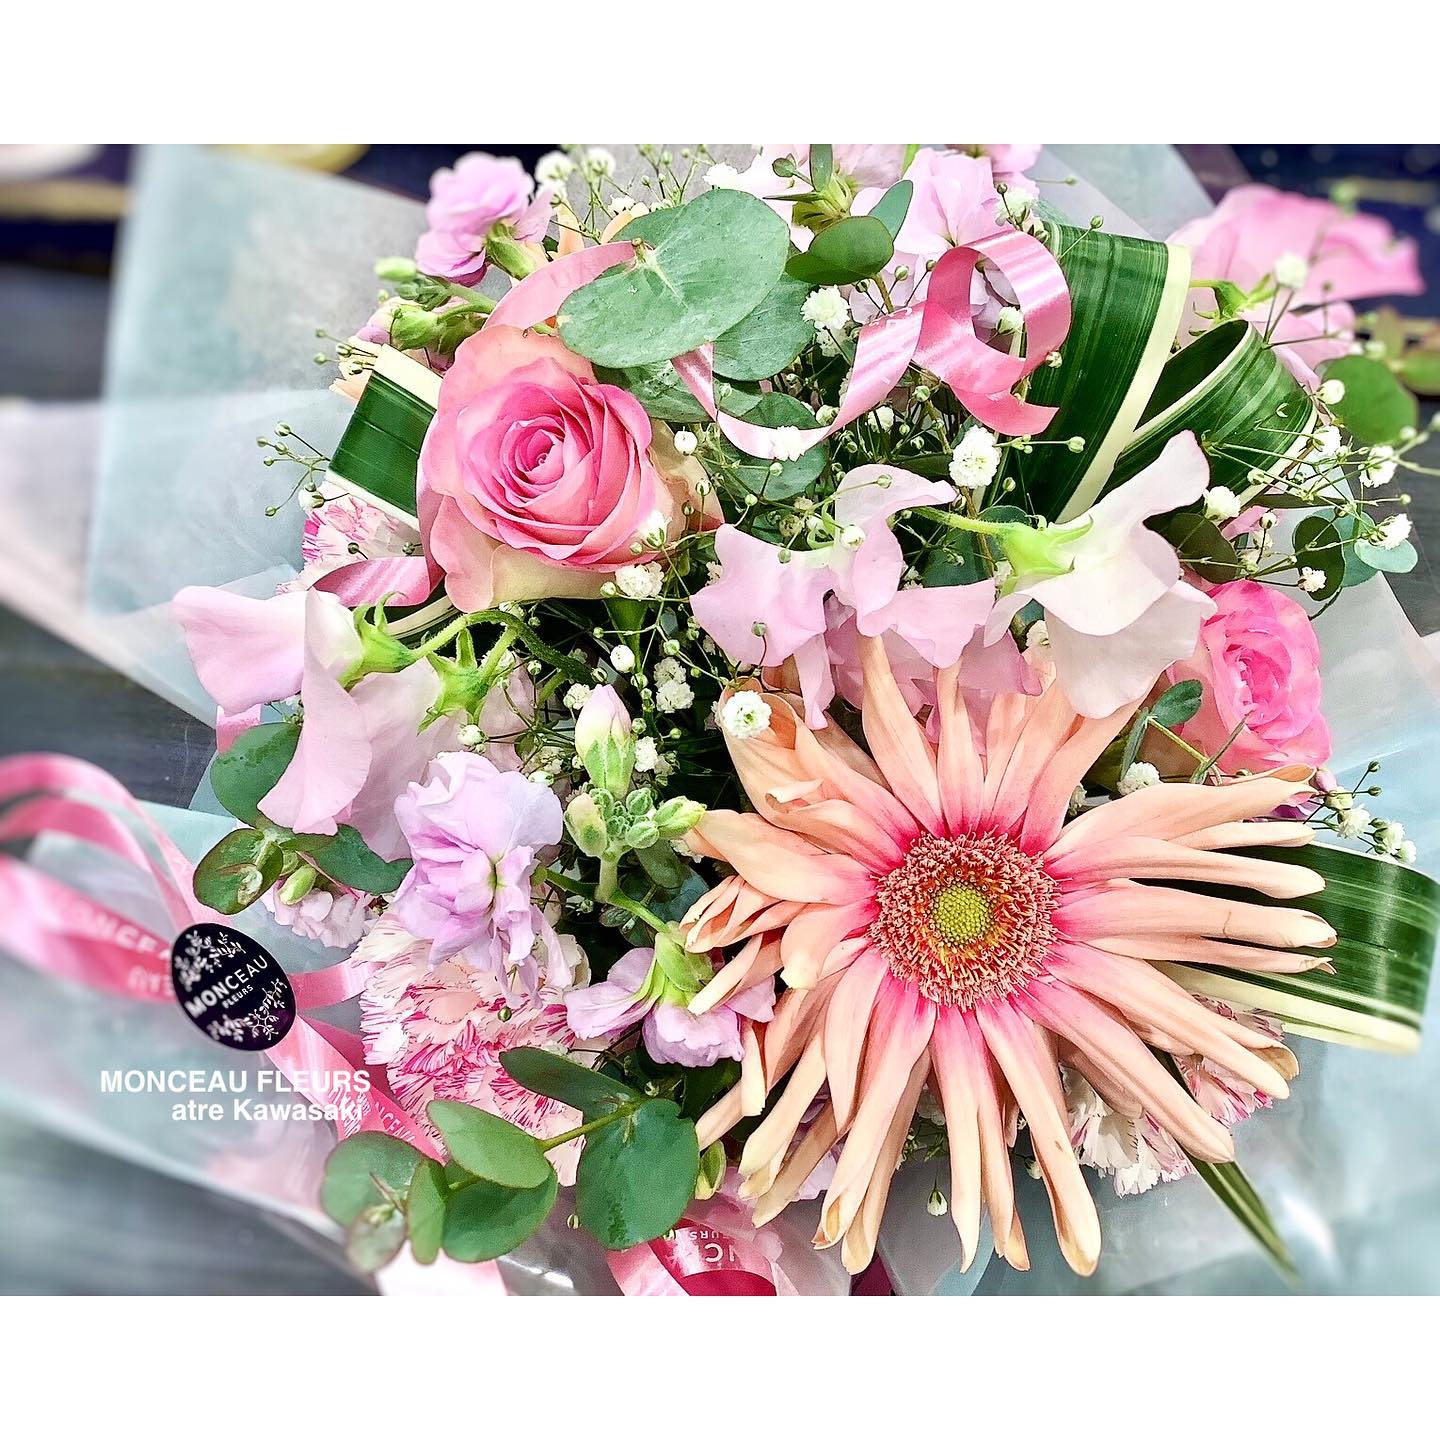 こちらも #ピンク色のブーケ♪

#春のお花！

と のお花をお入れして、

主役は、　
ウネウネと花びらにカーブが入ったような
#不思議なお花！
の です！！

不思議な魅力が、なんとも言えず
 ですよね^_^

たっぷりのお花が詰まった #ラウンドブーケ♪

どうかお客様が、
お喜び下さいましたように

・



#ご注文ありがとうございます♪

・

お気軽にお問い合わせください。
★★★★★★★★★★★★★★★
【モンソーフルール アトレ川崎店】
〒210-0007
神奈川県川崎市川崎区駅前本町26-1
アトレ川崎1F
TEL&FAX:044-200-6701
営業時間:10:00〜21:00
★★★★★★★★★★★★★★★
モンソーフルールはパリ発！
ヨーロッパ有数のフラワーチェーンブランドです。

・

∞∞∞∞∞∞∞∞∞∞∞∞∞∞∞∞∞∞∞
スタッフ募集中
経験者優遇　未経験者歓迎
下記の宛先まで、履歴書をご送付下さい。

〒230-0051 
神奈川県横浜市鶴見区鶴見中央1-17-5
正木屋ビル1Ｆ
株式会社花芳商店
モンソーフルールアトレ川崎店
採用担当係宛
∞∞∞∞∞∞∞∞∞∞∞∞∞∞∞∞∞∞∞